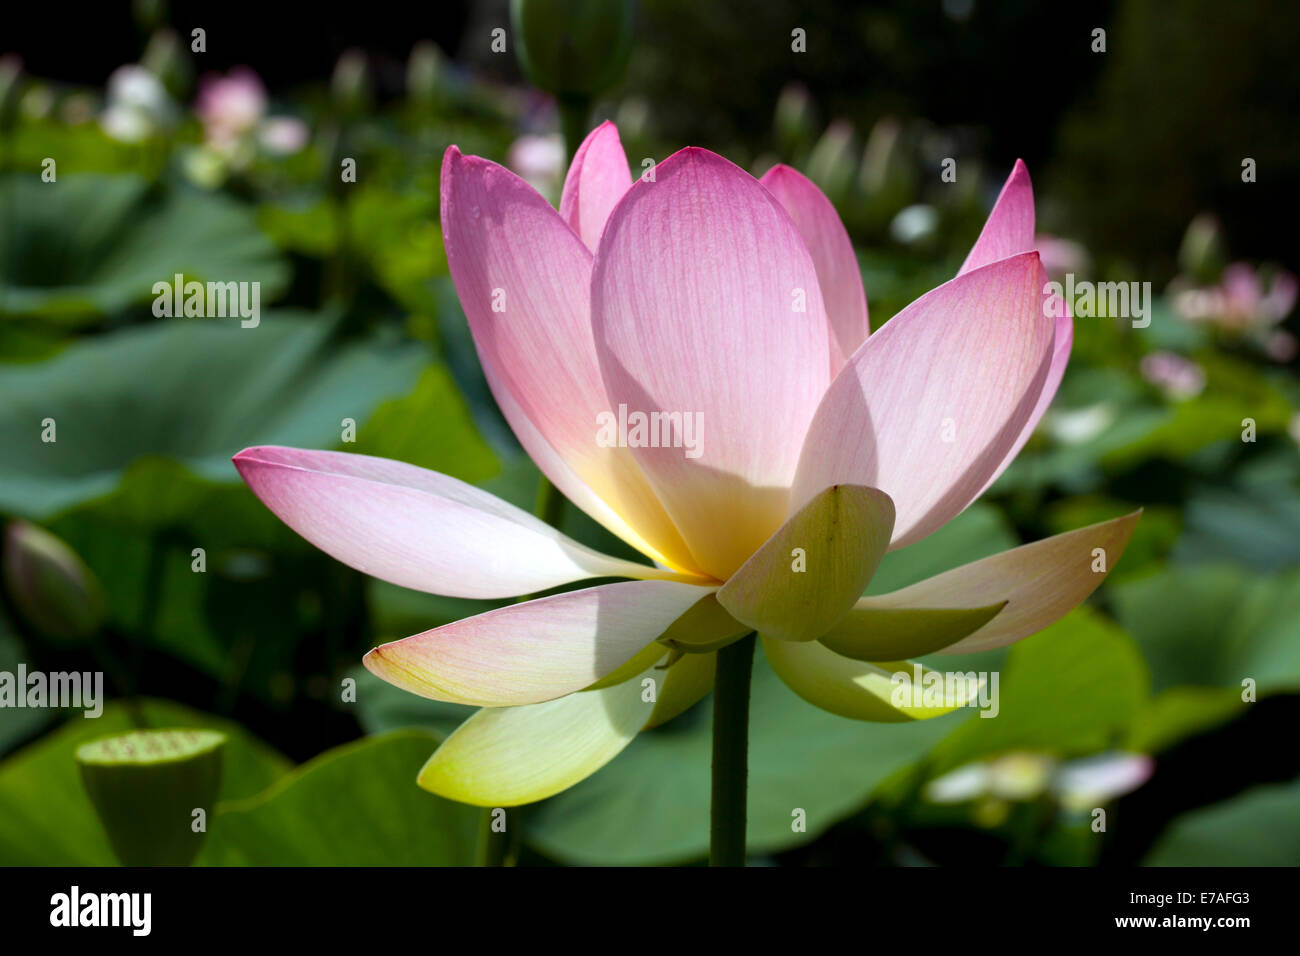 Indian Lotus (Nelumbo nucifera) flower, Arboretum Baumpark Ellerhoop, Schleswig-Holstein, Germany Stock Photo